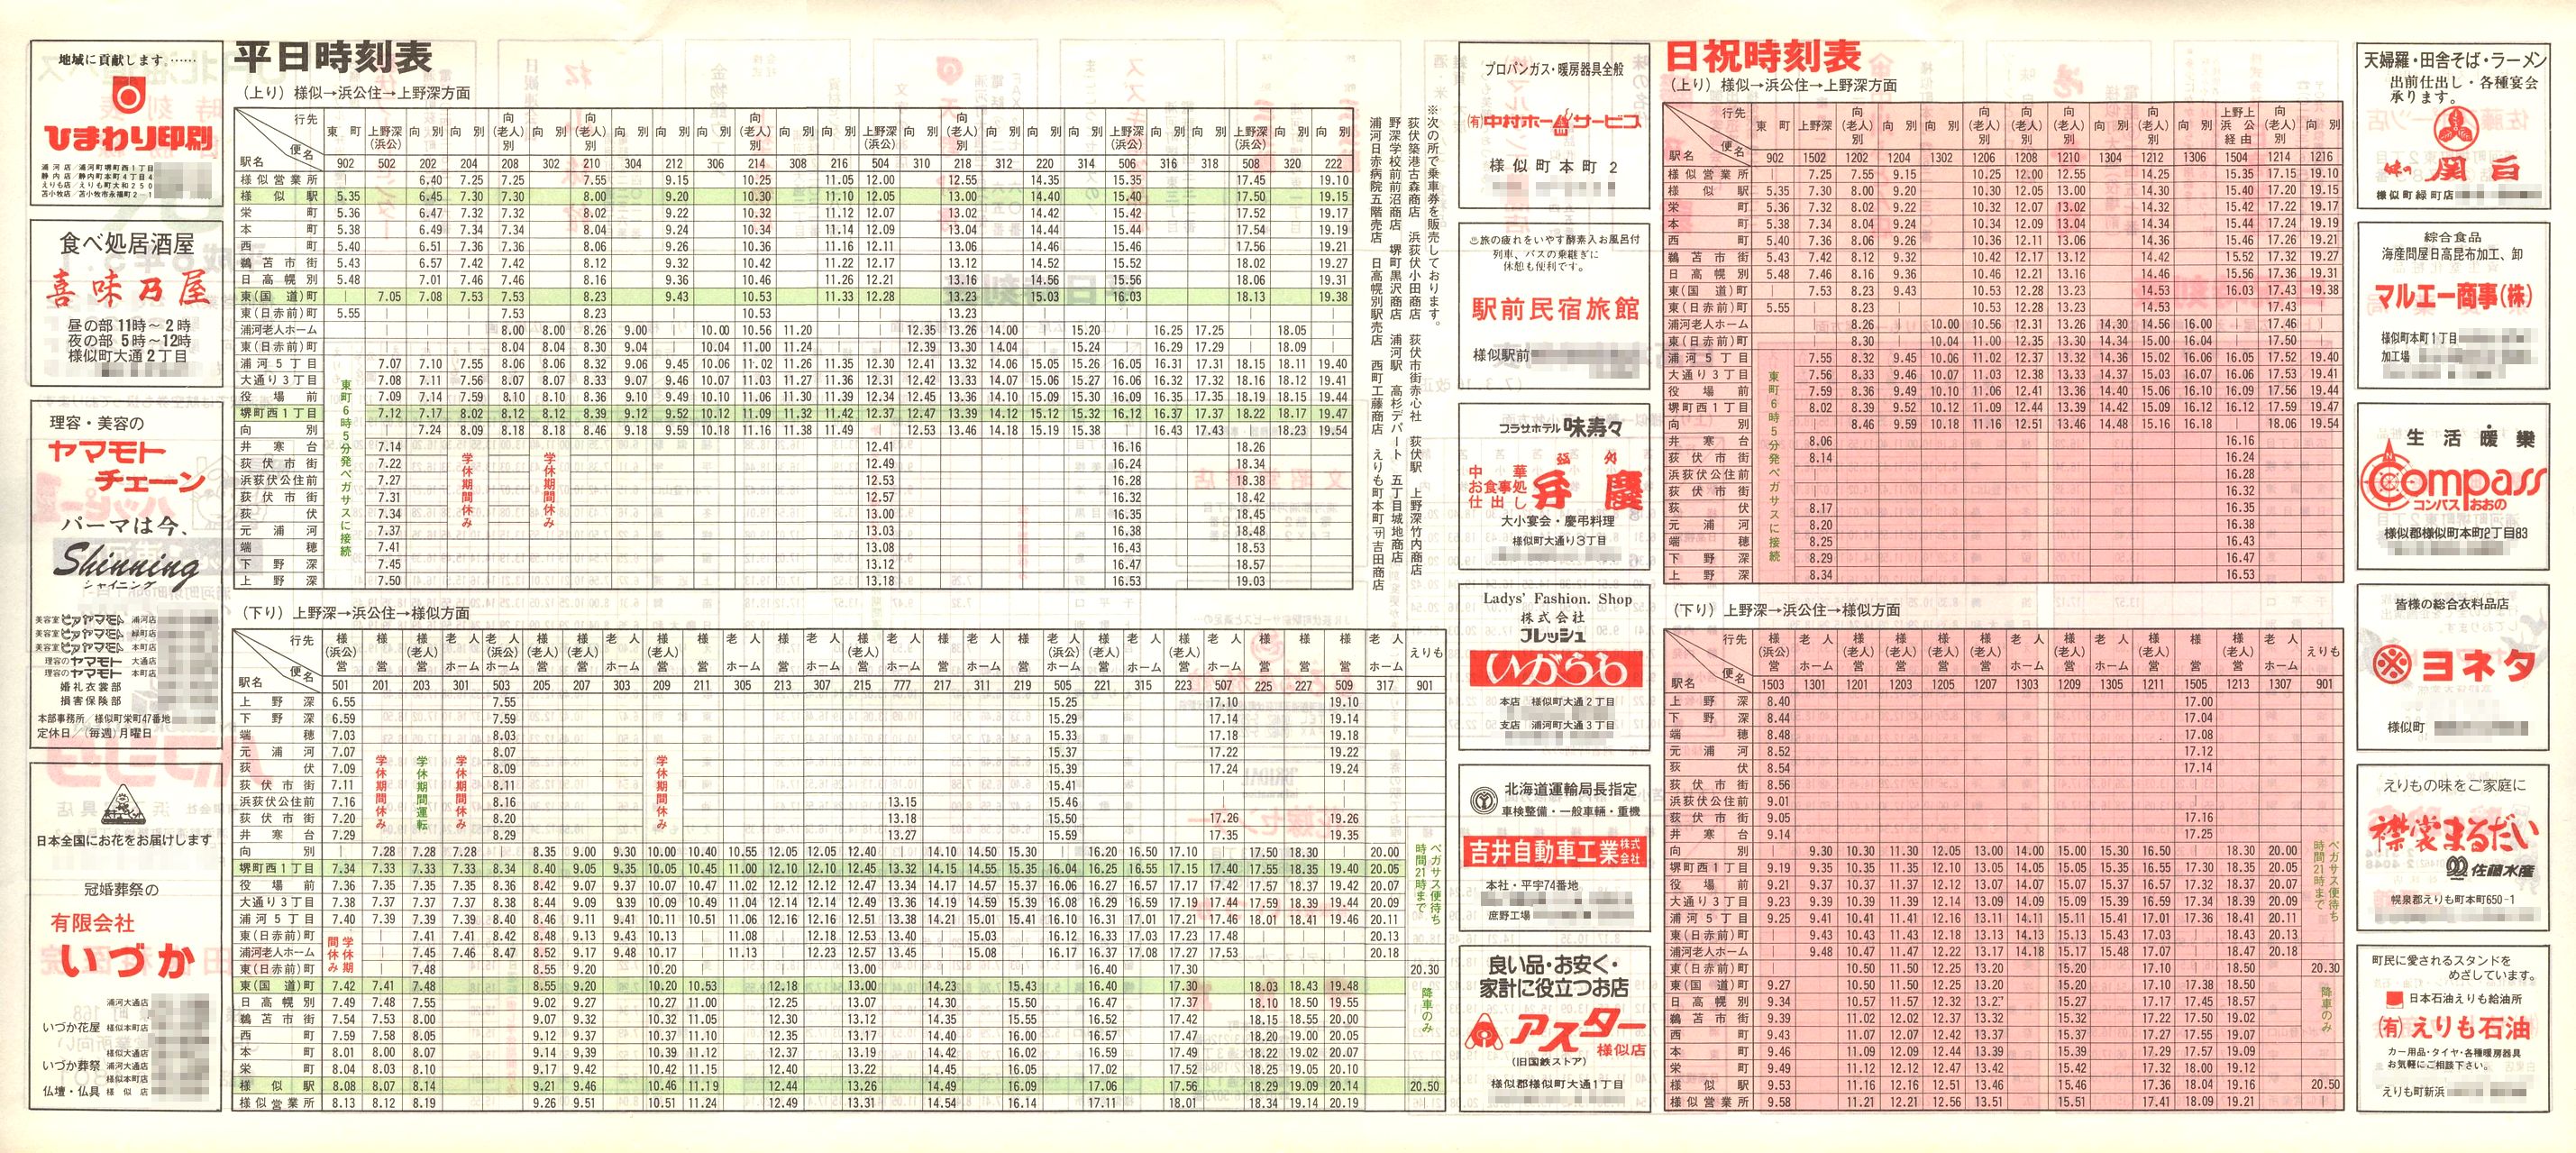 1994-03-01改正_ＪＲ北海道バス_日勝線時刻表裏面